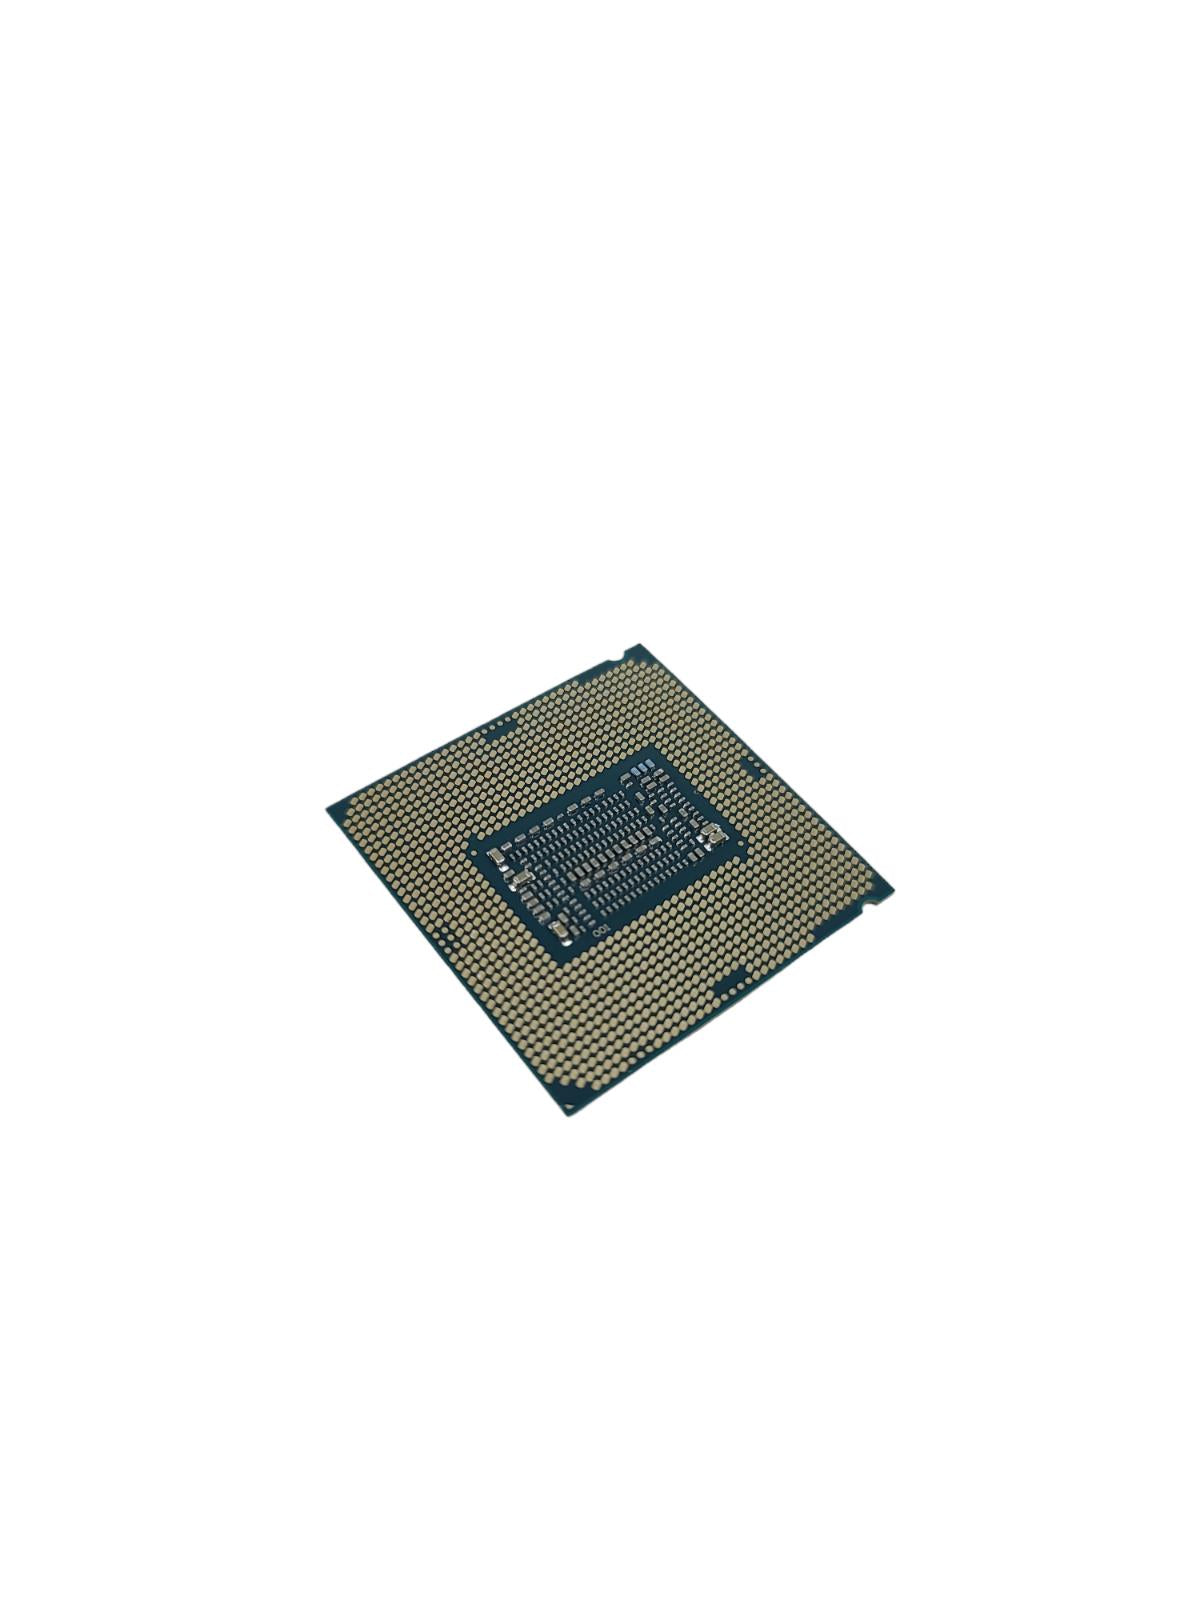 Intel Core i5-8500T processor 2.1 GHz 9MB Smart Cache Core SR3XD